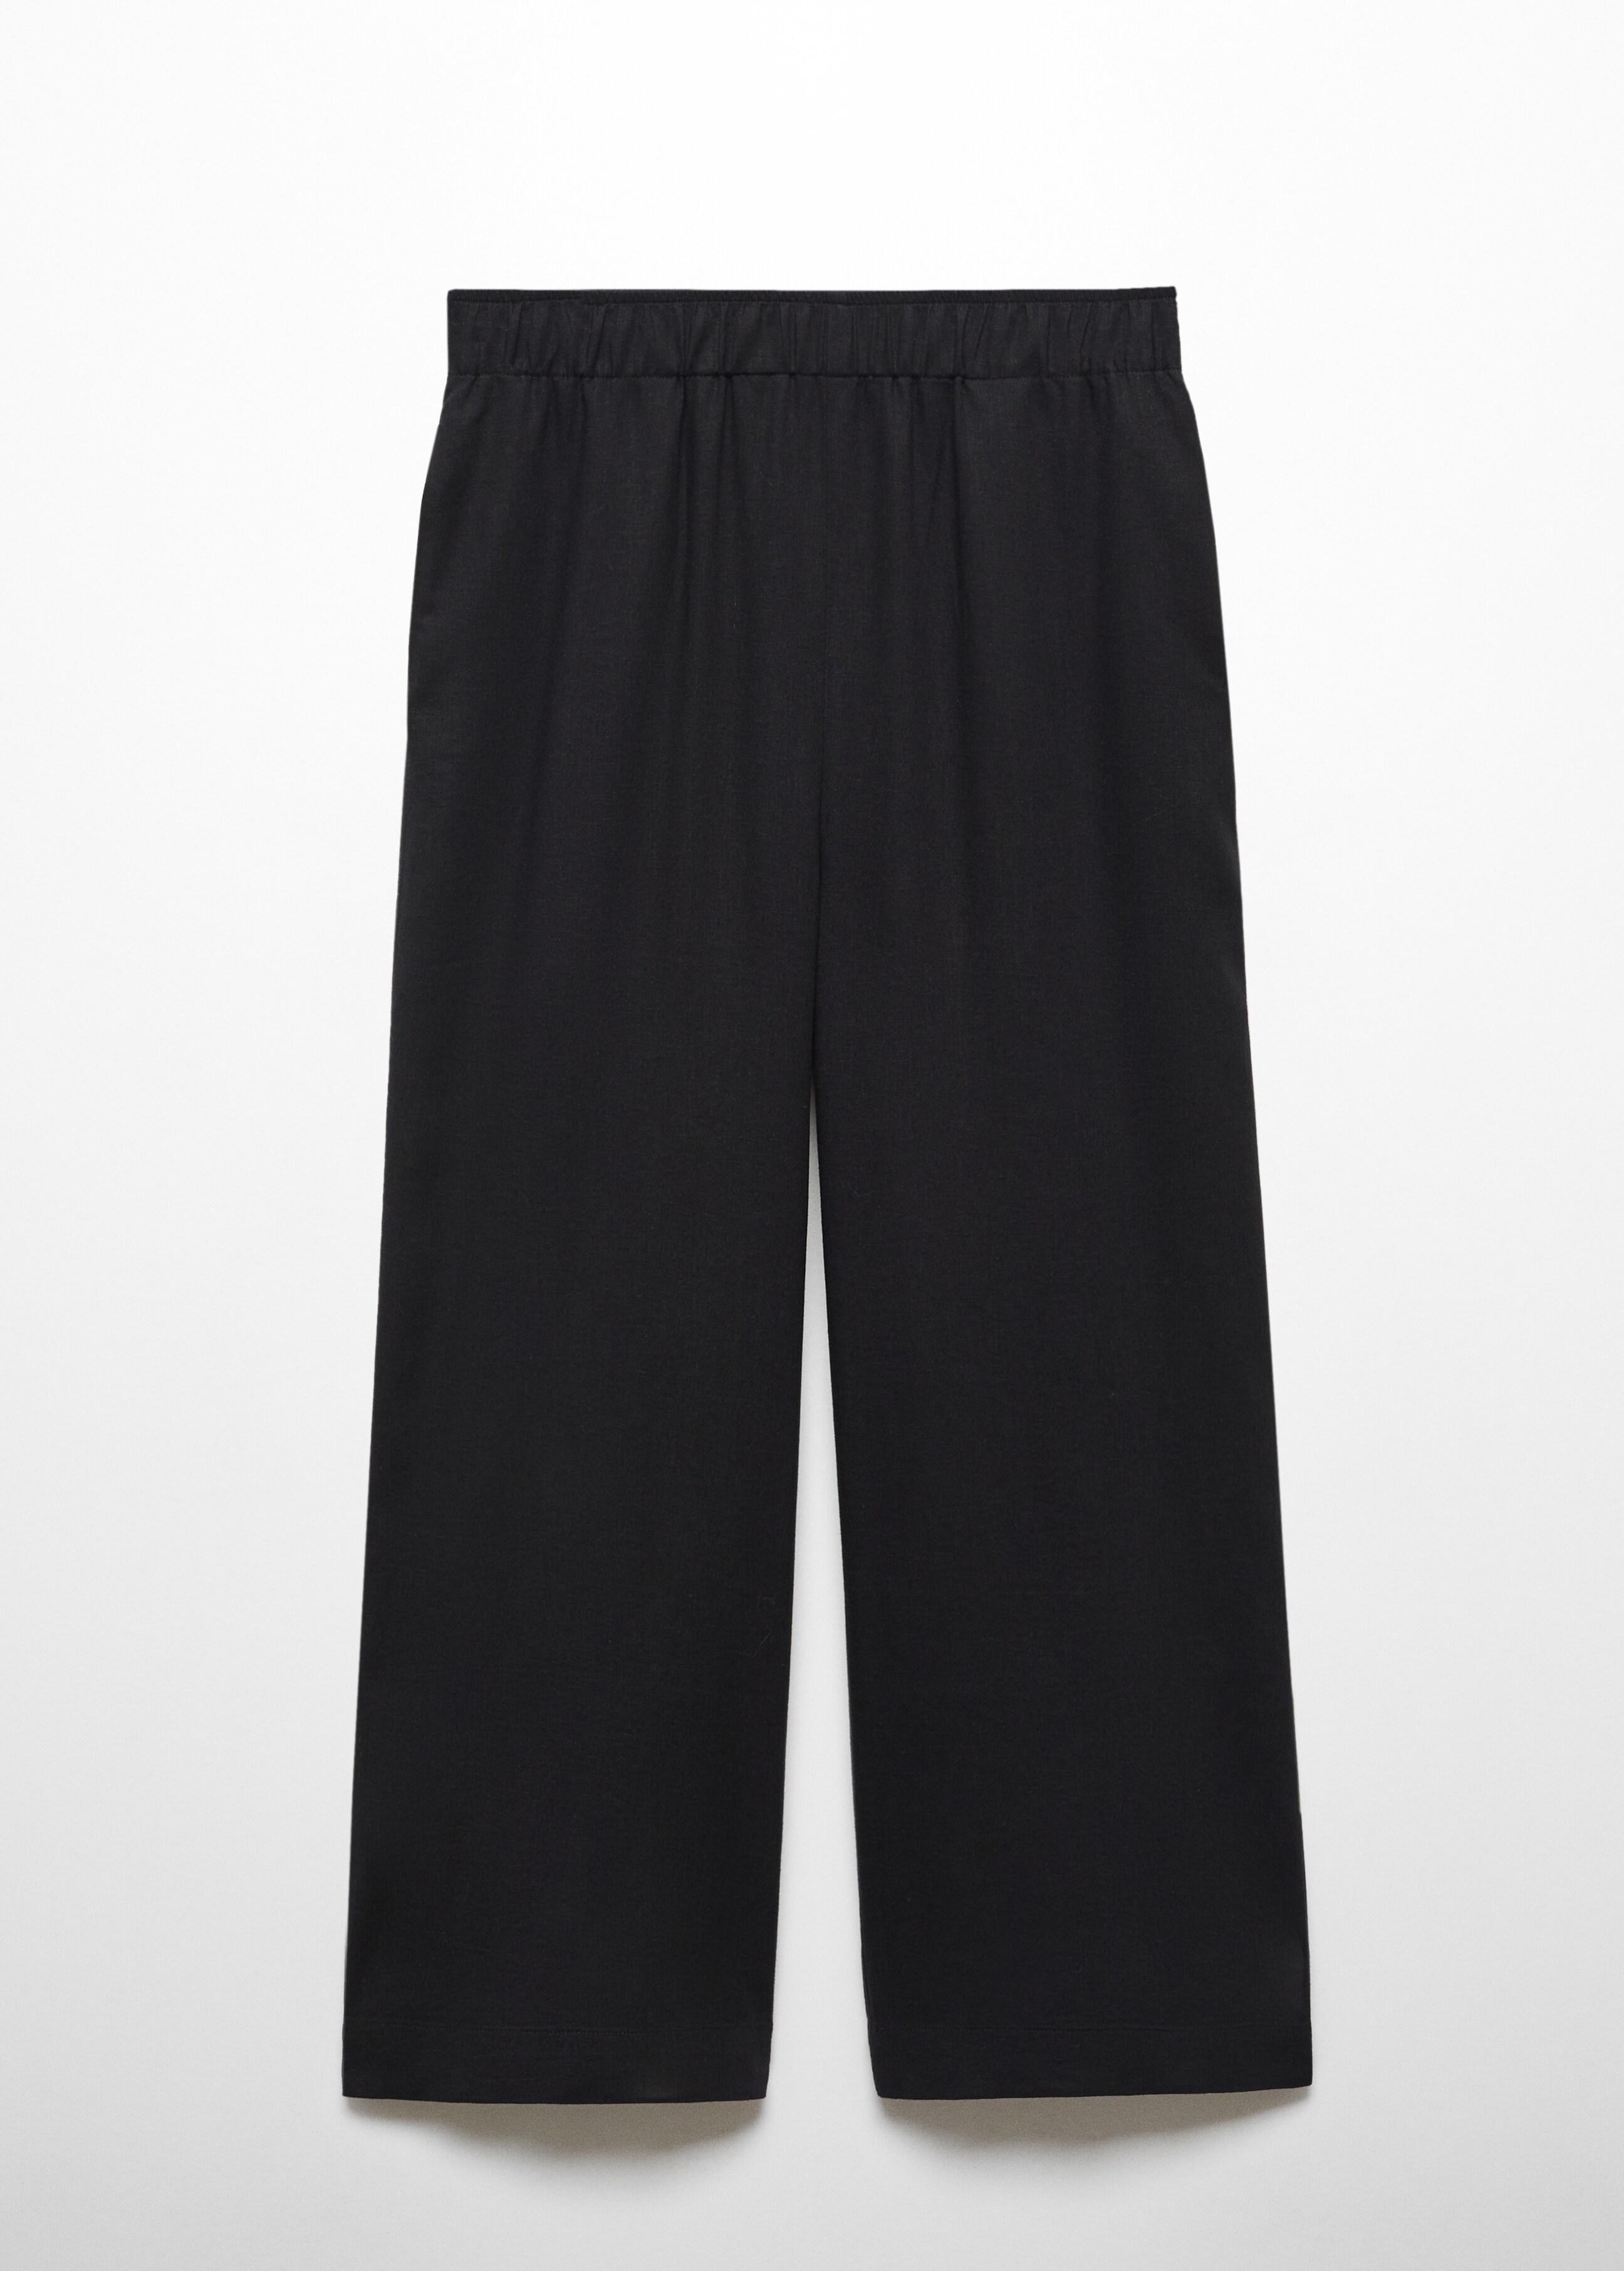 Pantalón culotte lino - Artículo sin modelo